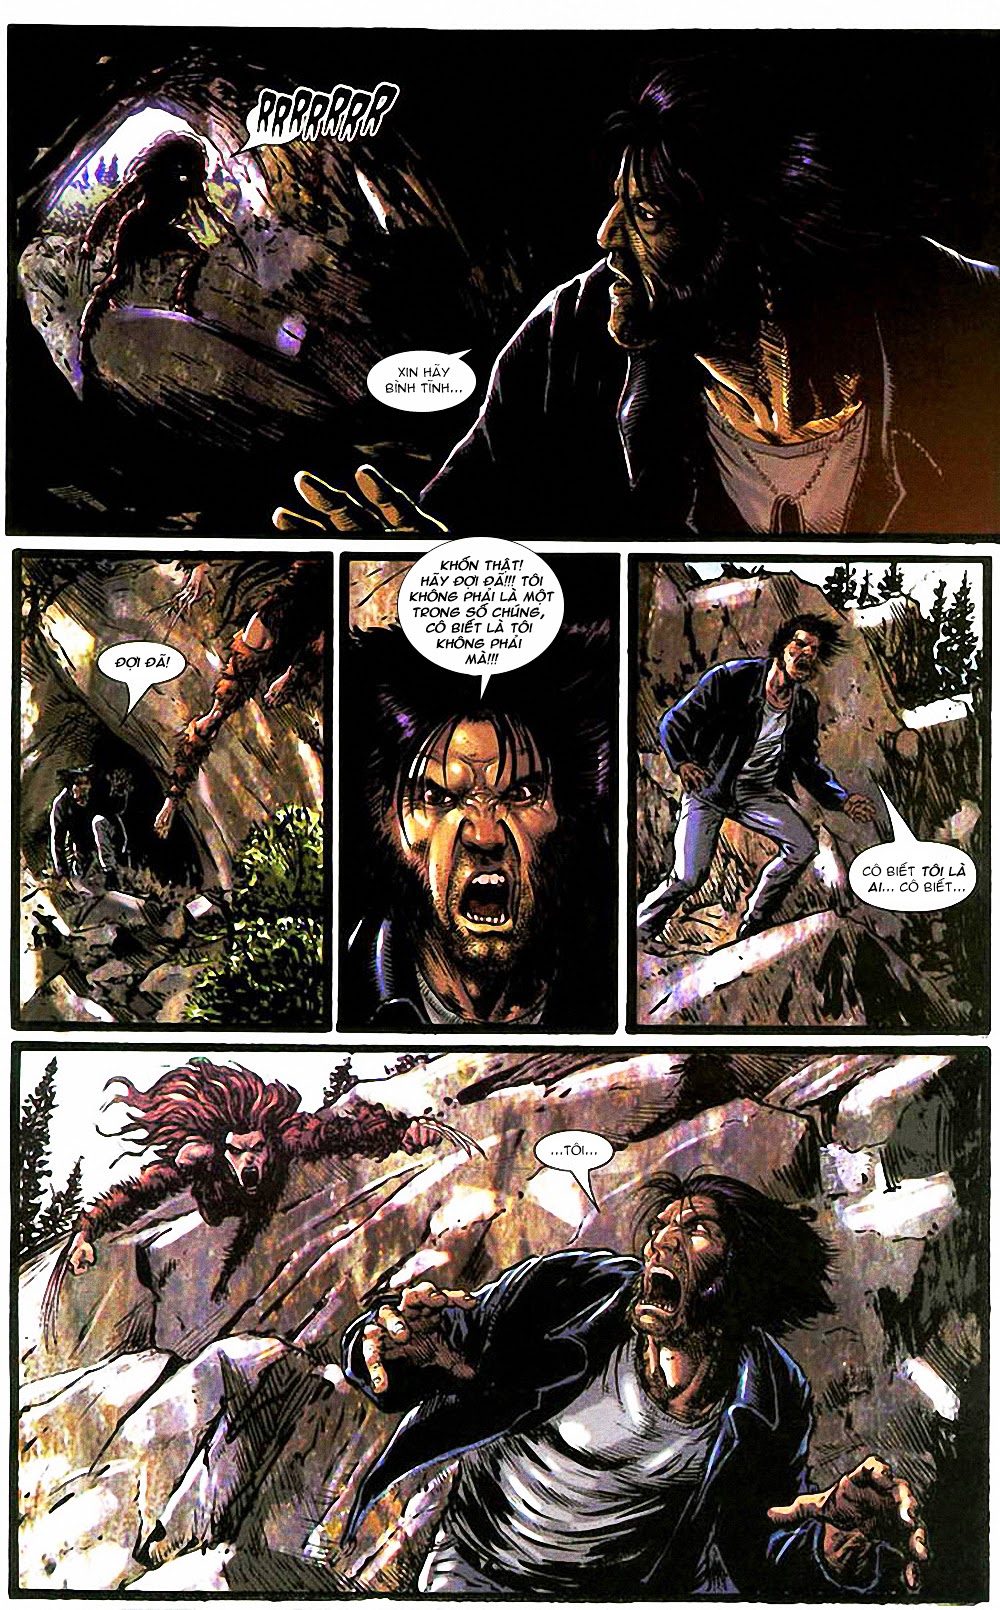 Wolverine Vol.3